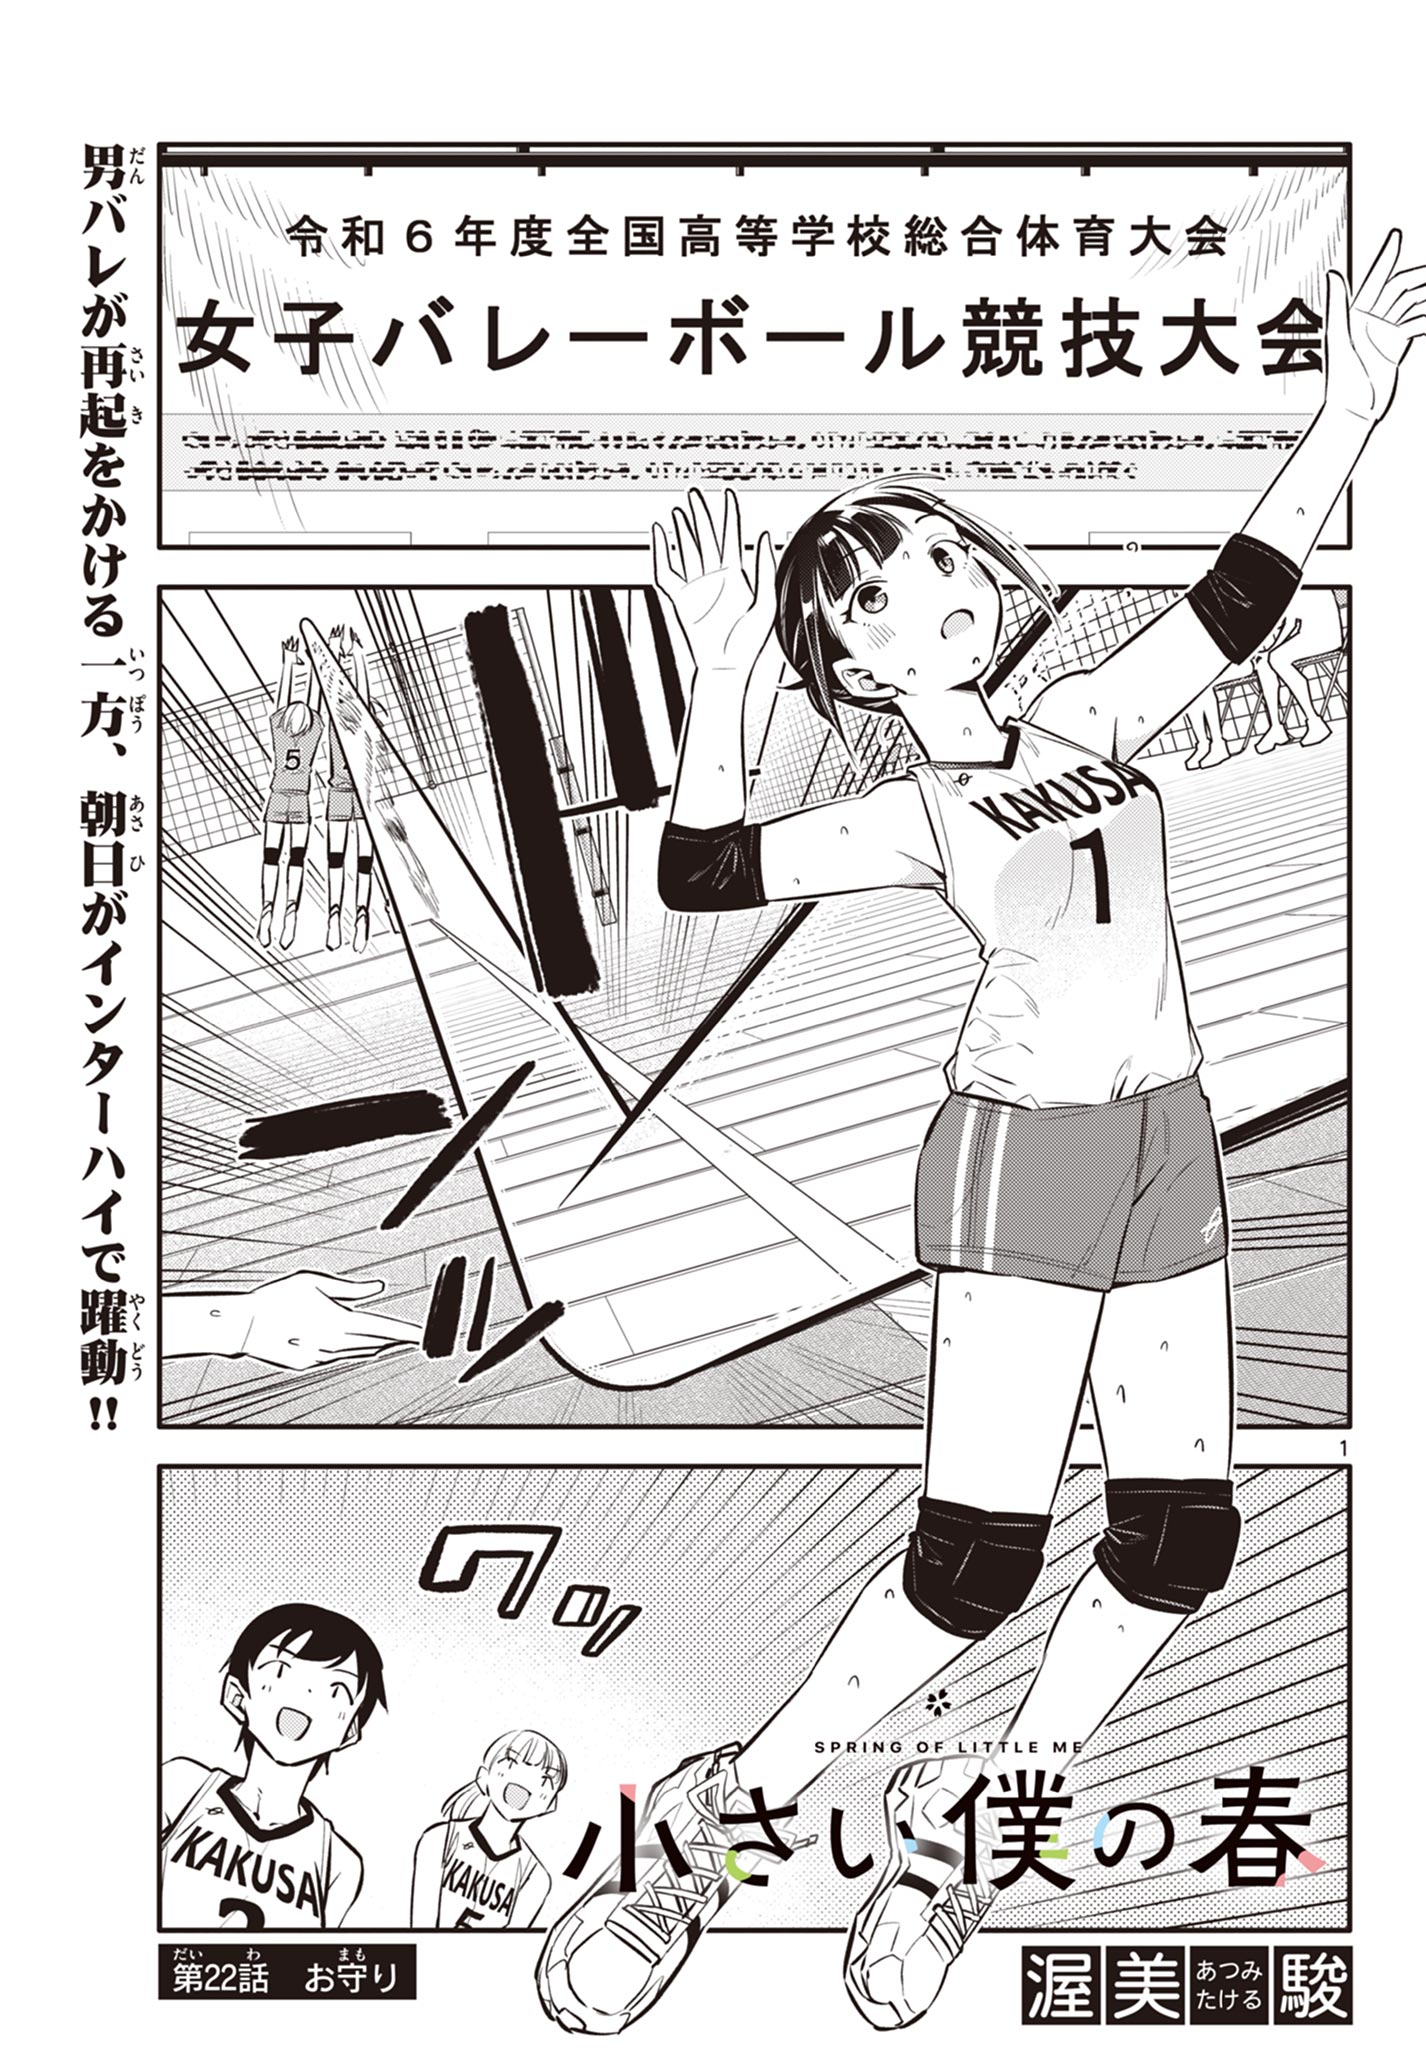 Chiisai Boku no Haru - Chapter 22 - Page 1